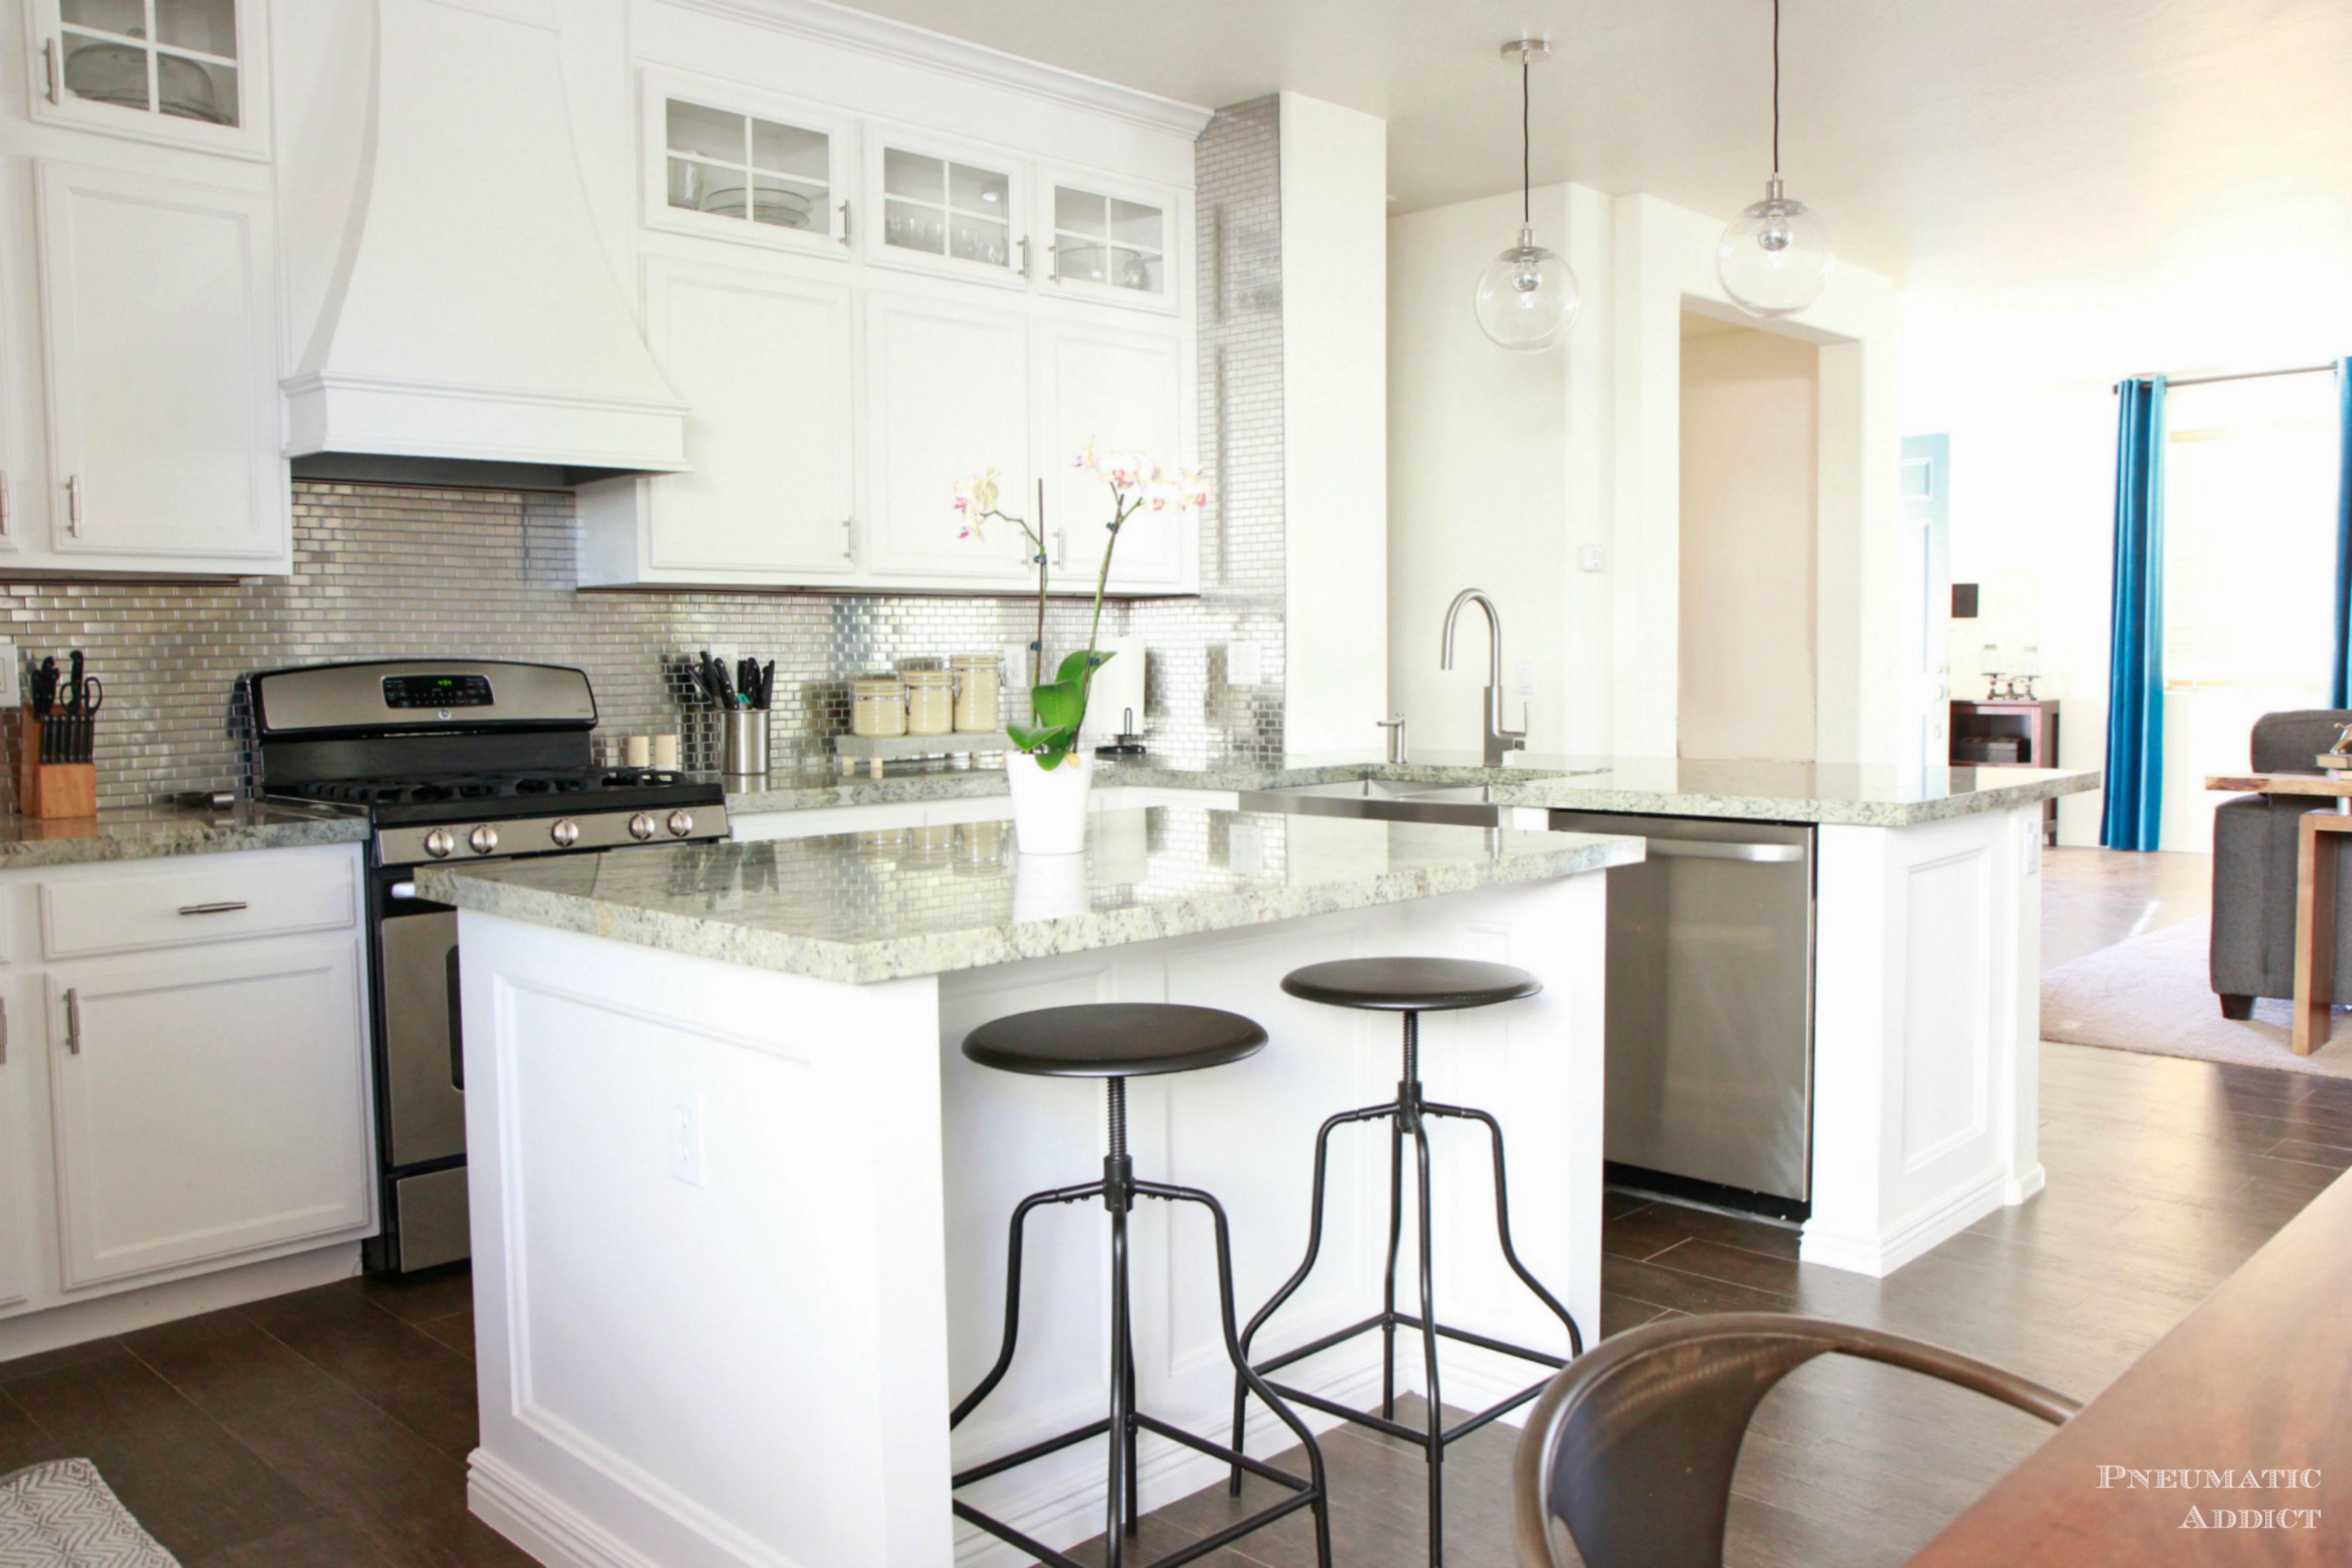 Kitchen White Kitchen Cabinets Beautiful On For 11 Best Design Ideas 0 White Kitchen Cabinets